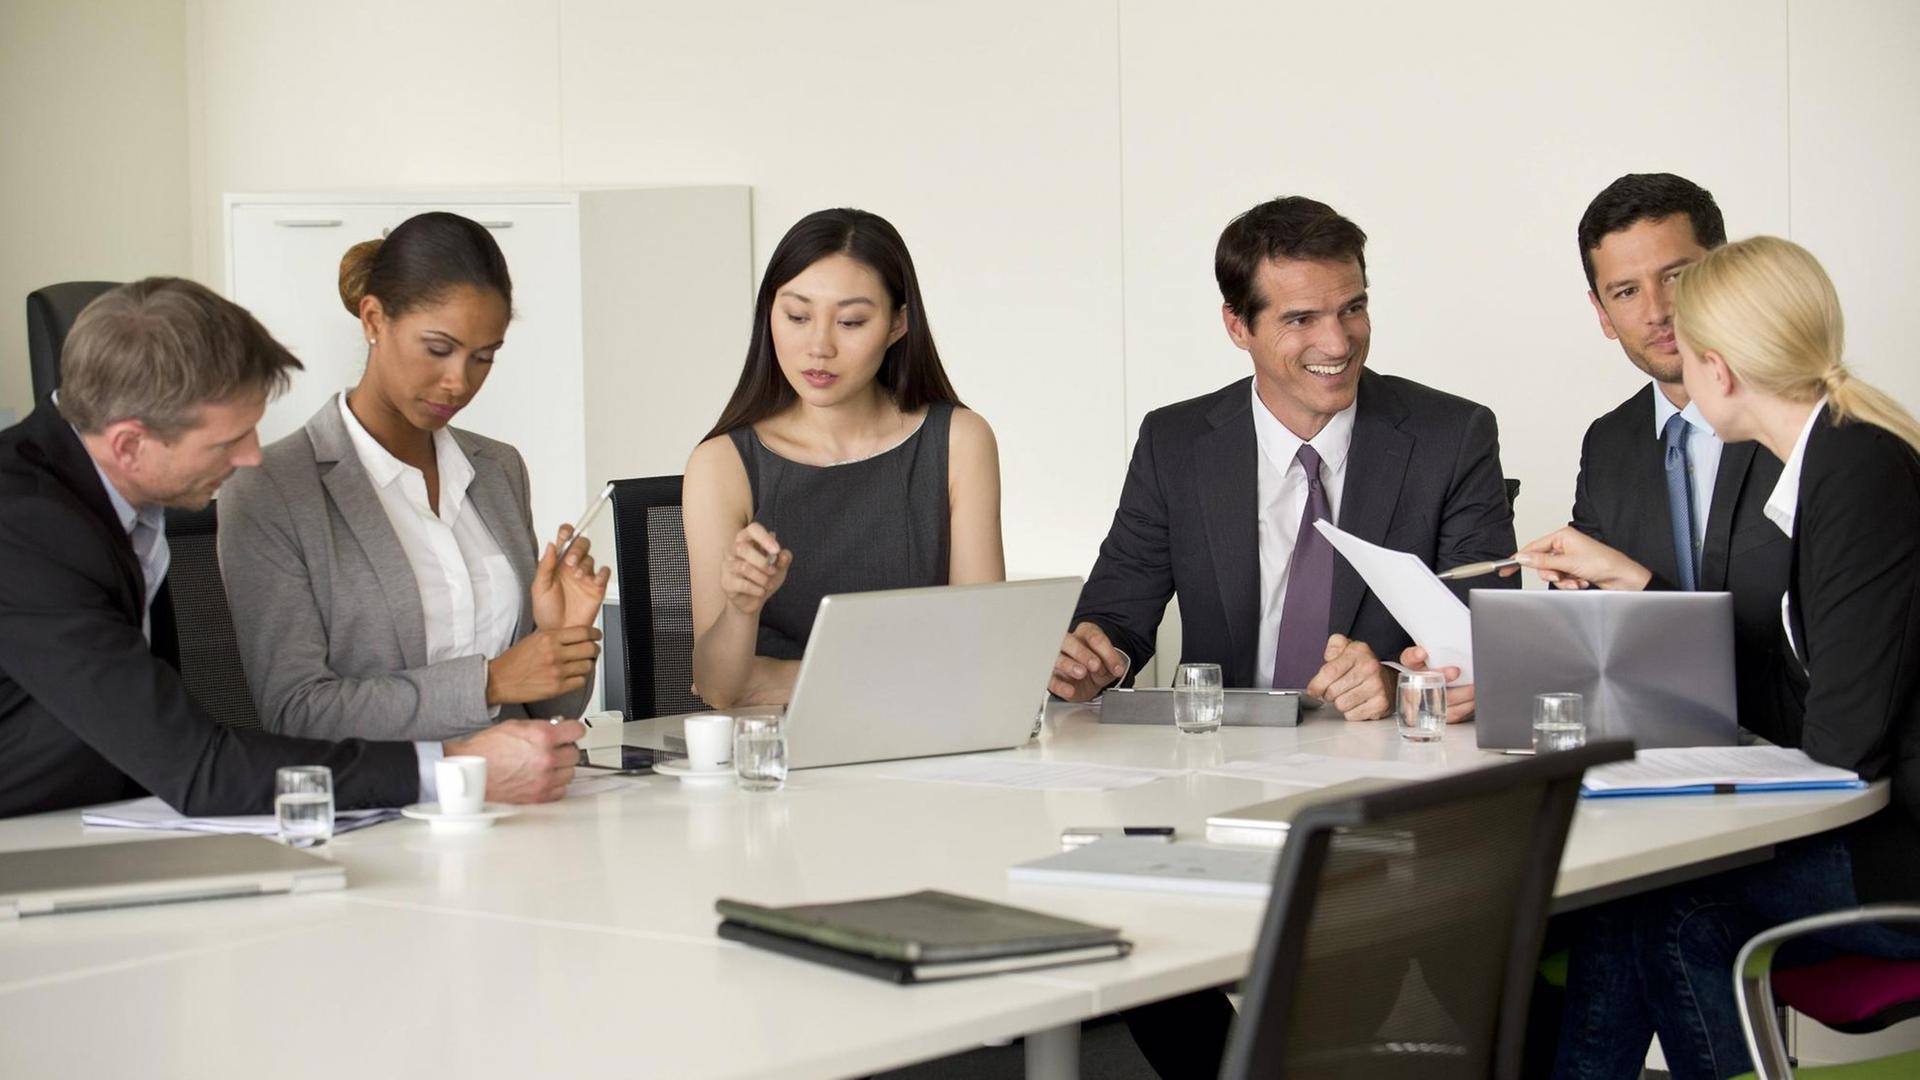 Drei Männer und drei Frauen in Business-Kleidung sitzen um einen Konferenz-Tisch, auf dem Laptops stehen